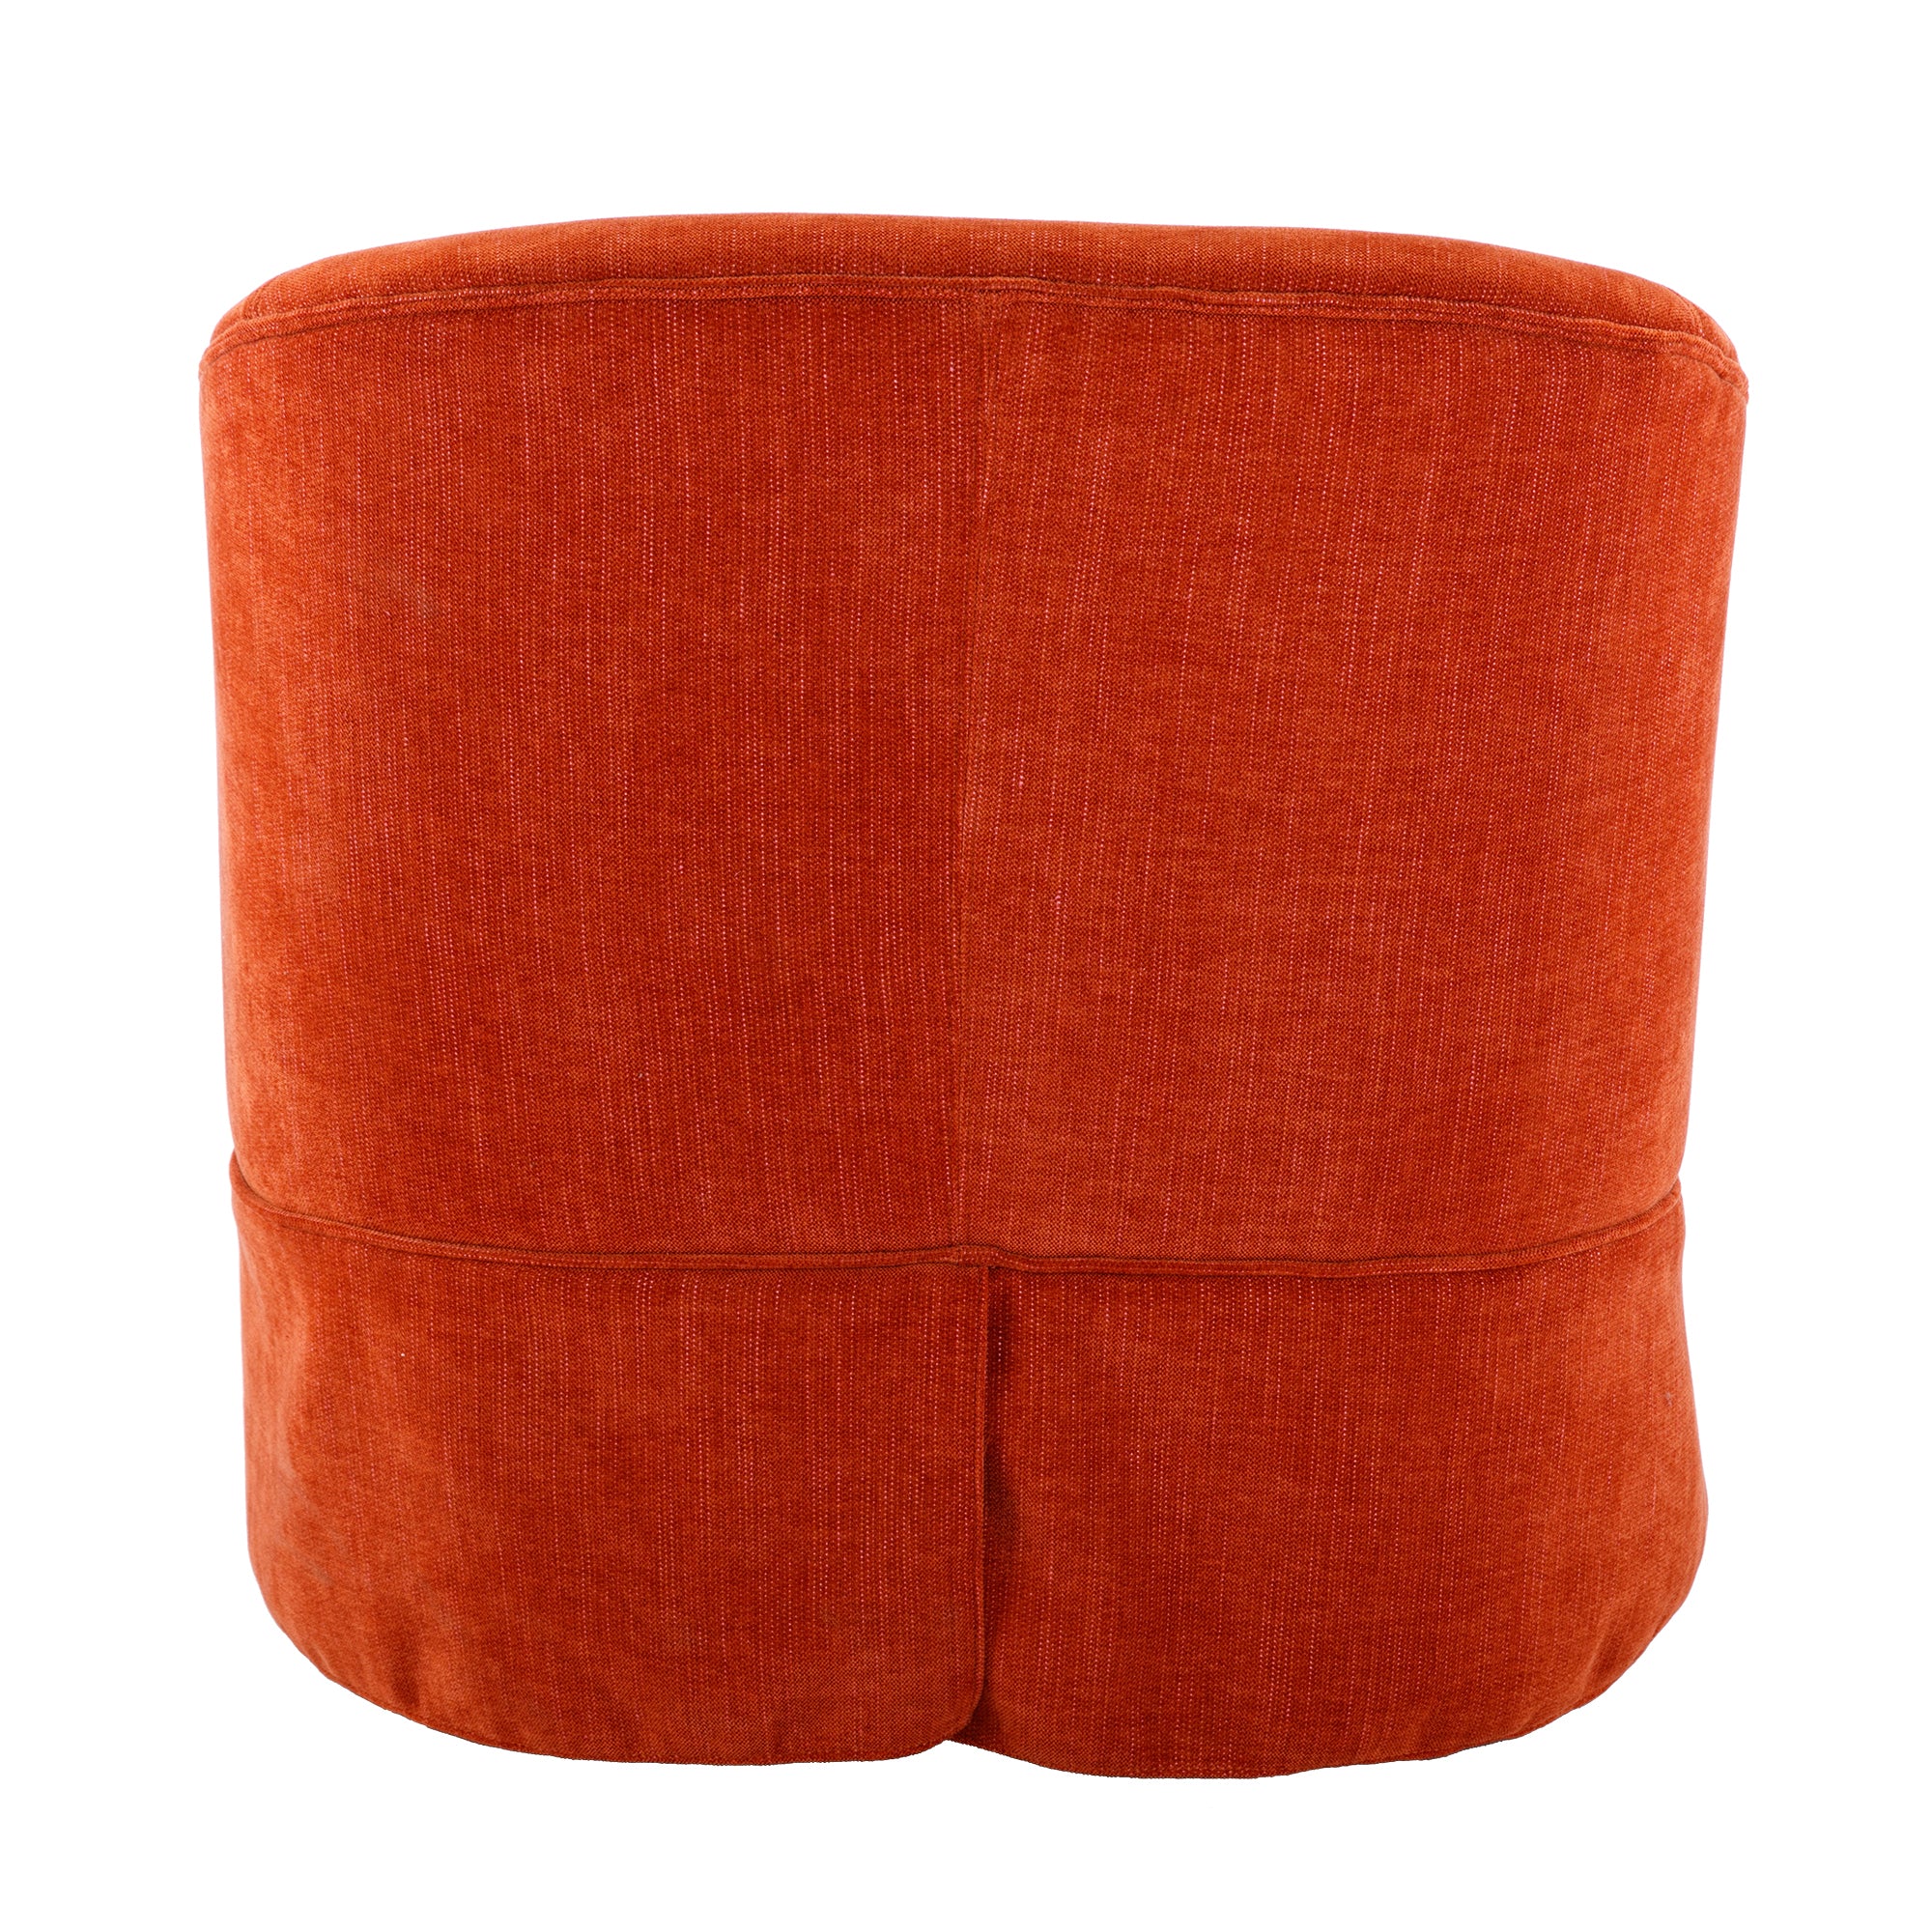 360 degree Swivel Accent Armchair Linen Blend Orange orange-foam-upholstered